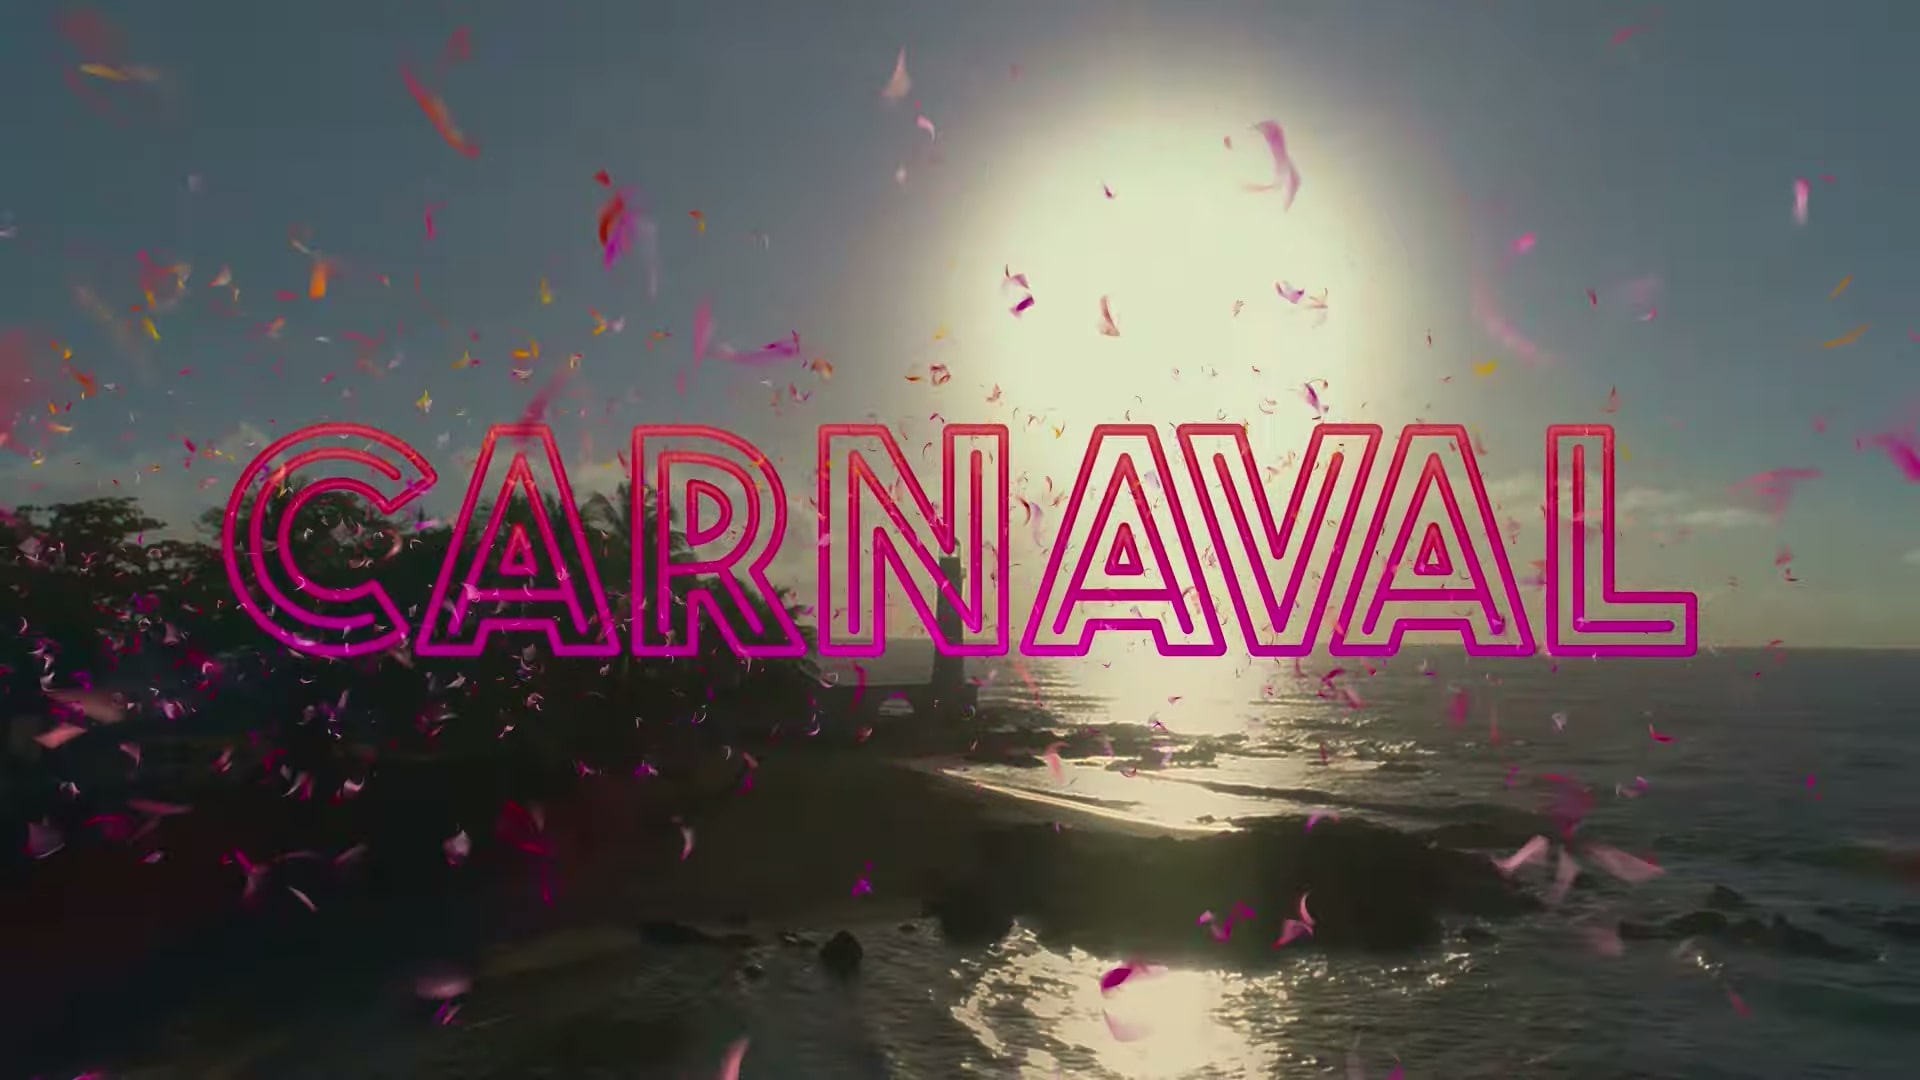 Carnaval Trailer Netflix, Netflix Teen Dramas, Coming to Netflix in June 2021